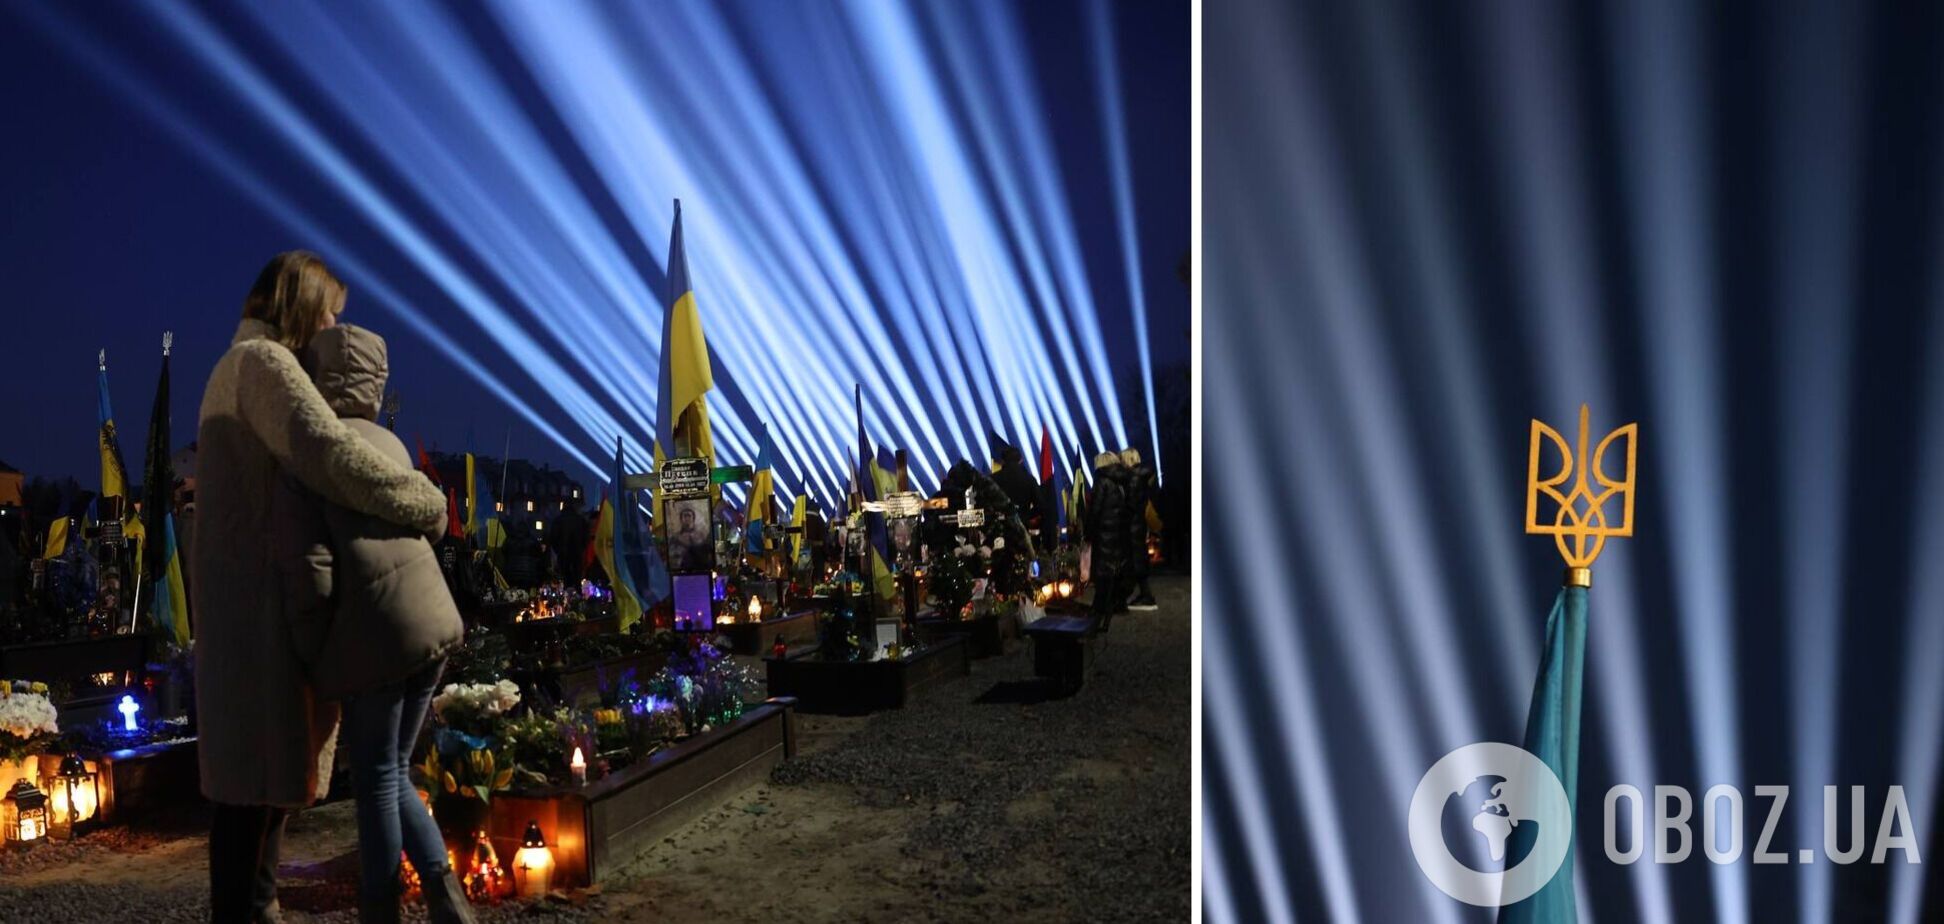 У Львові запустили світлові промені  над могилами загиблих воїнів, похованих на Личаківському цвинтарі. Фото і відео 